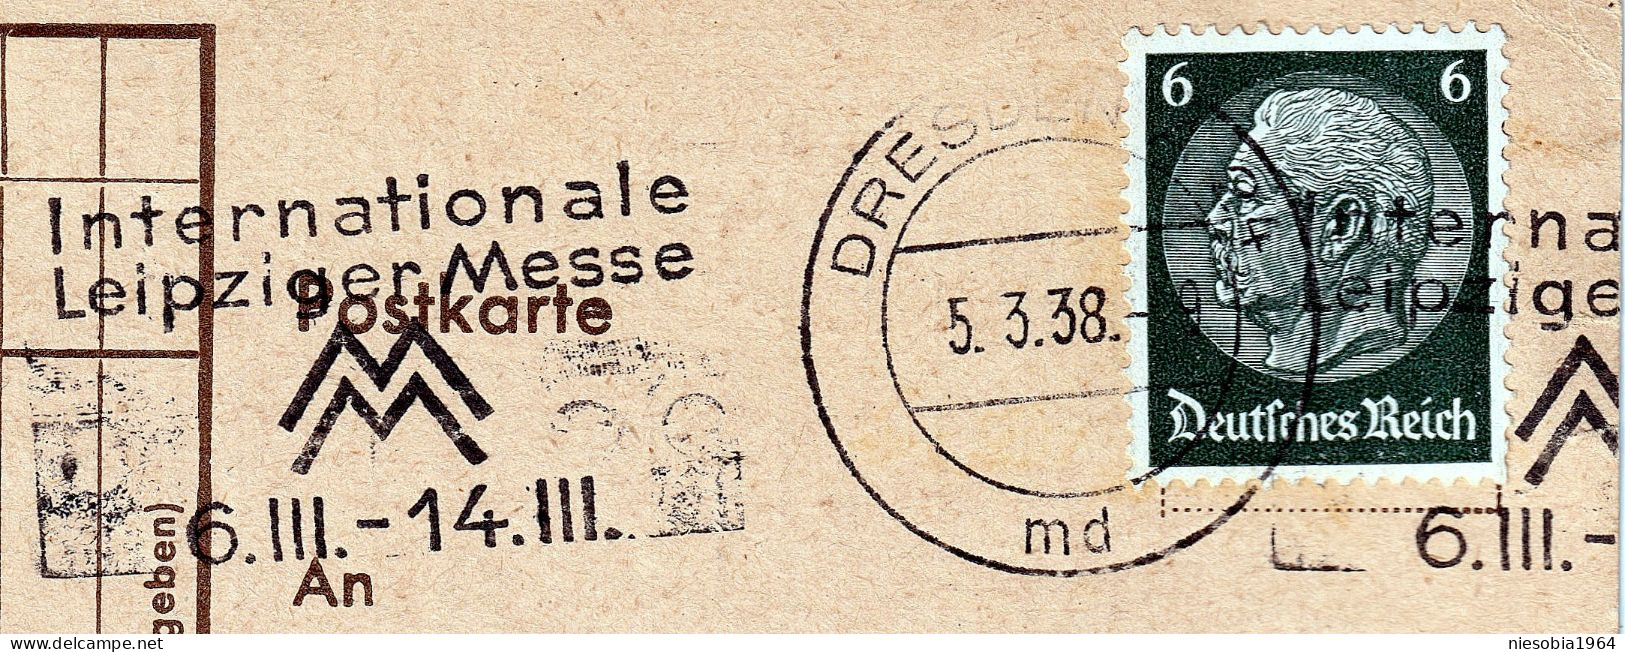 Heinr. Schmidt & Co.Zigarrenfabrik Und Heurenmann & Franke Hauf-Kaffe Siegel DRESDEN Internazionale Leipziger Messe 1938 - Cartes Postales